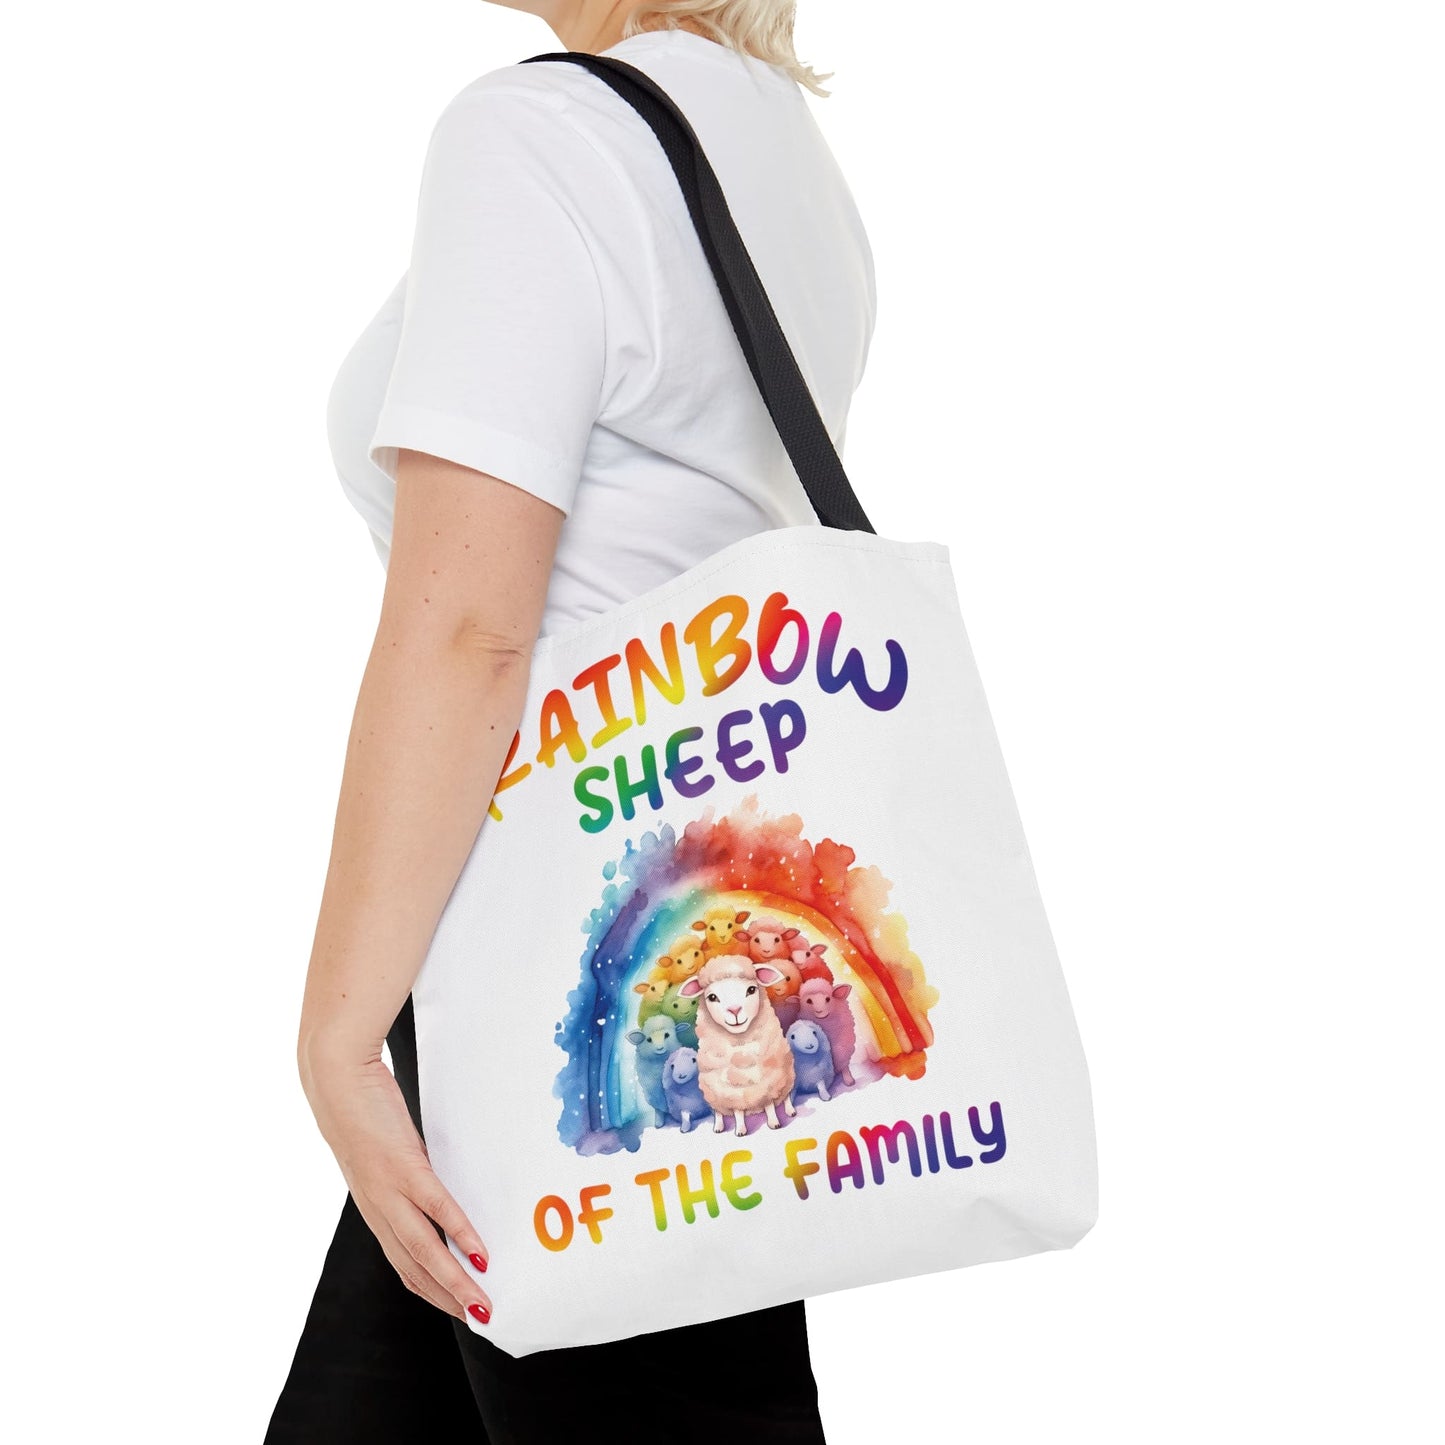 LGBTQ pride tote bag, rainbow sheep of the family bag, medium